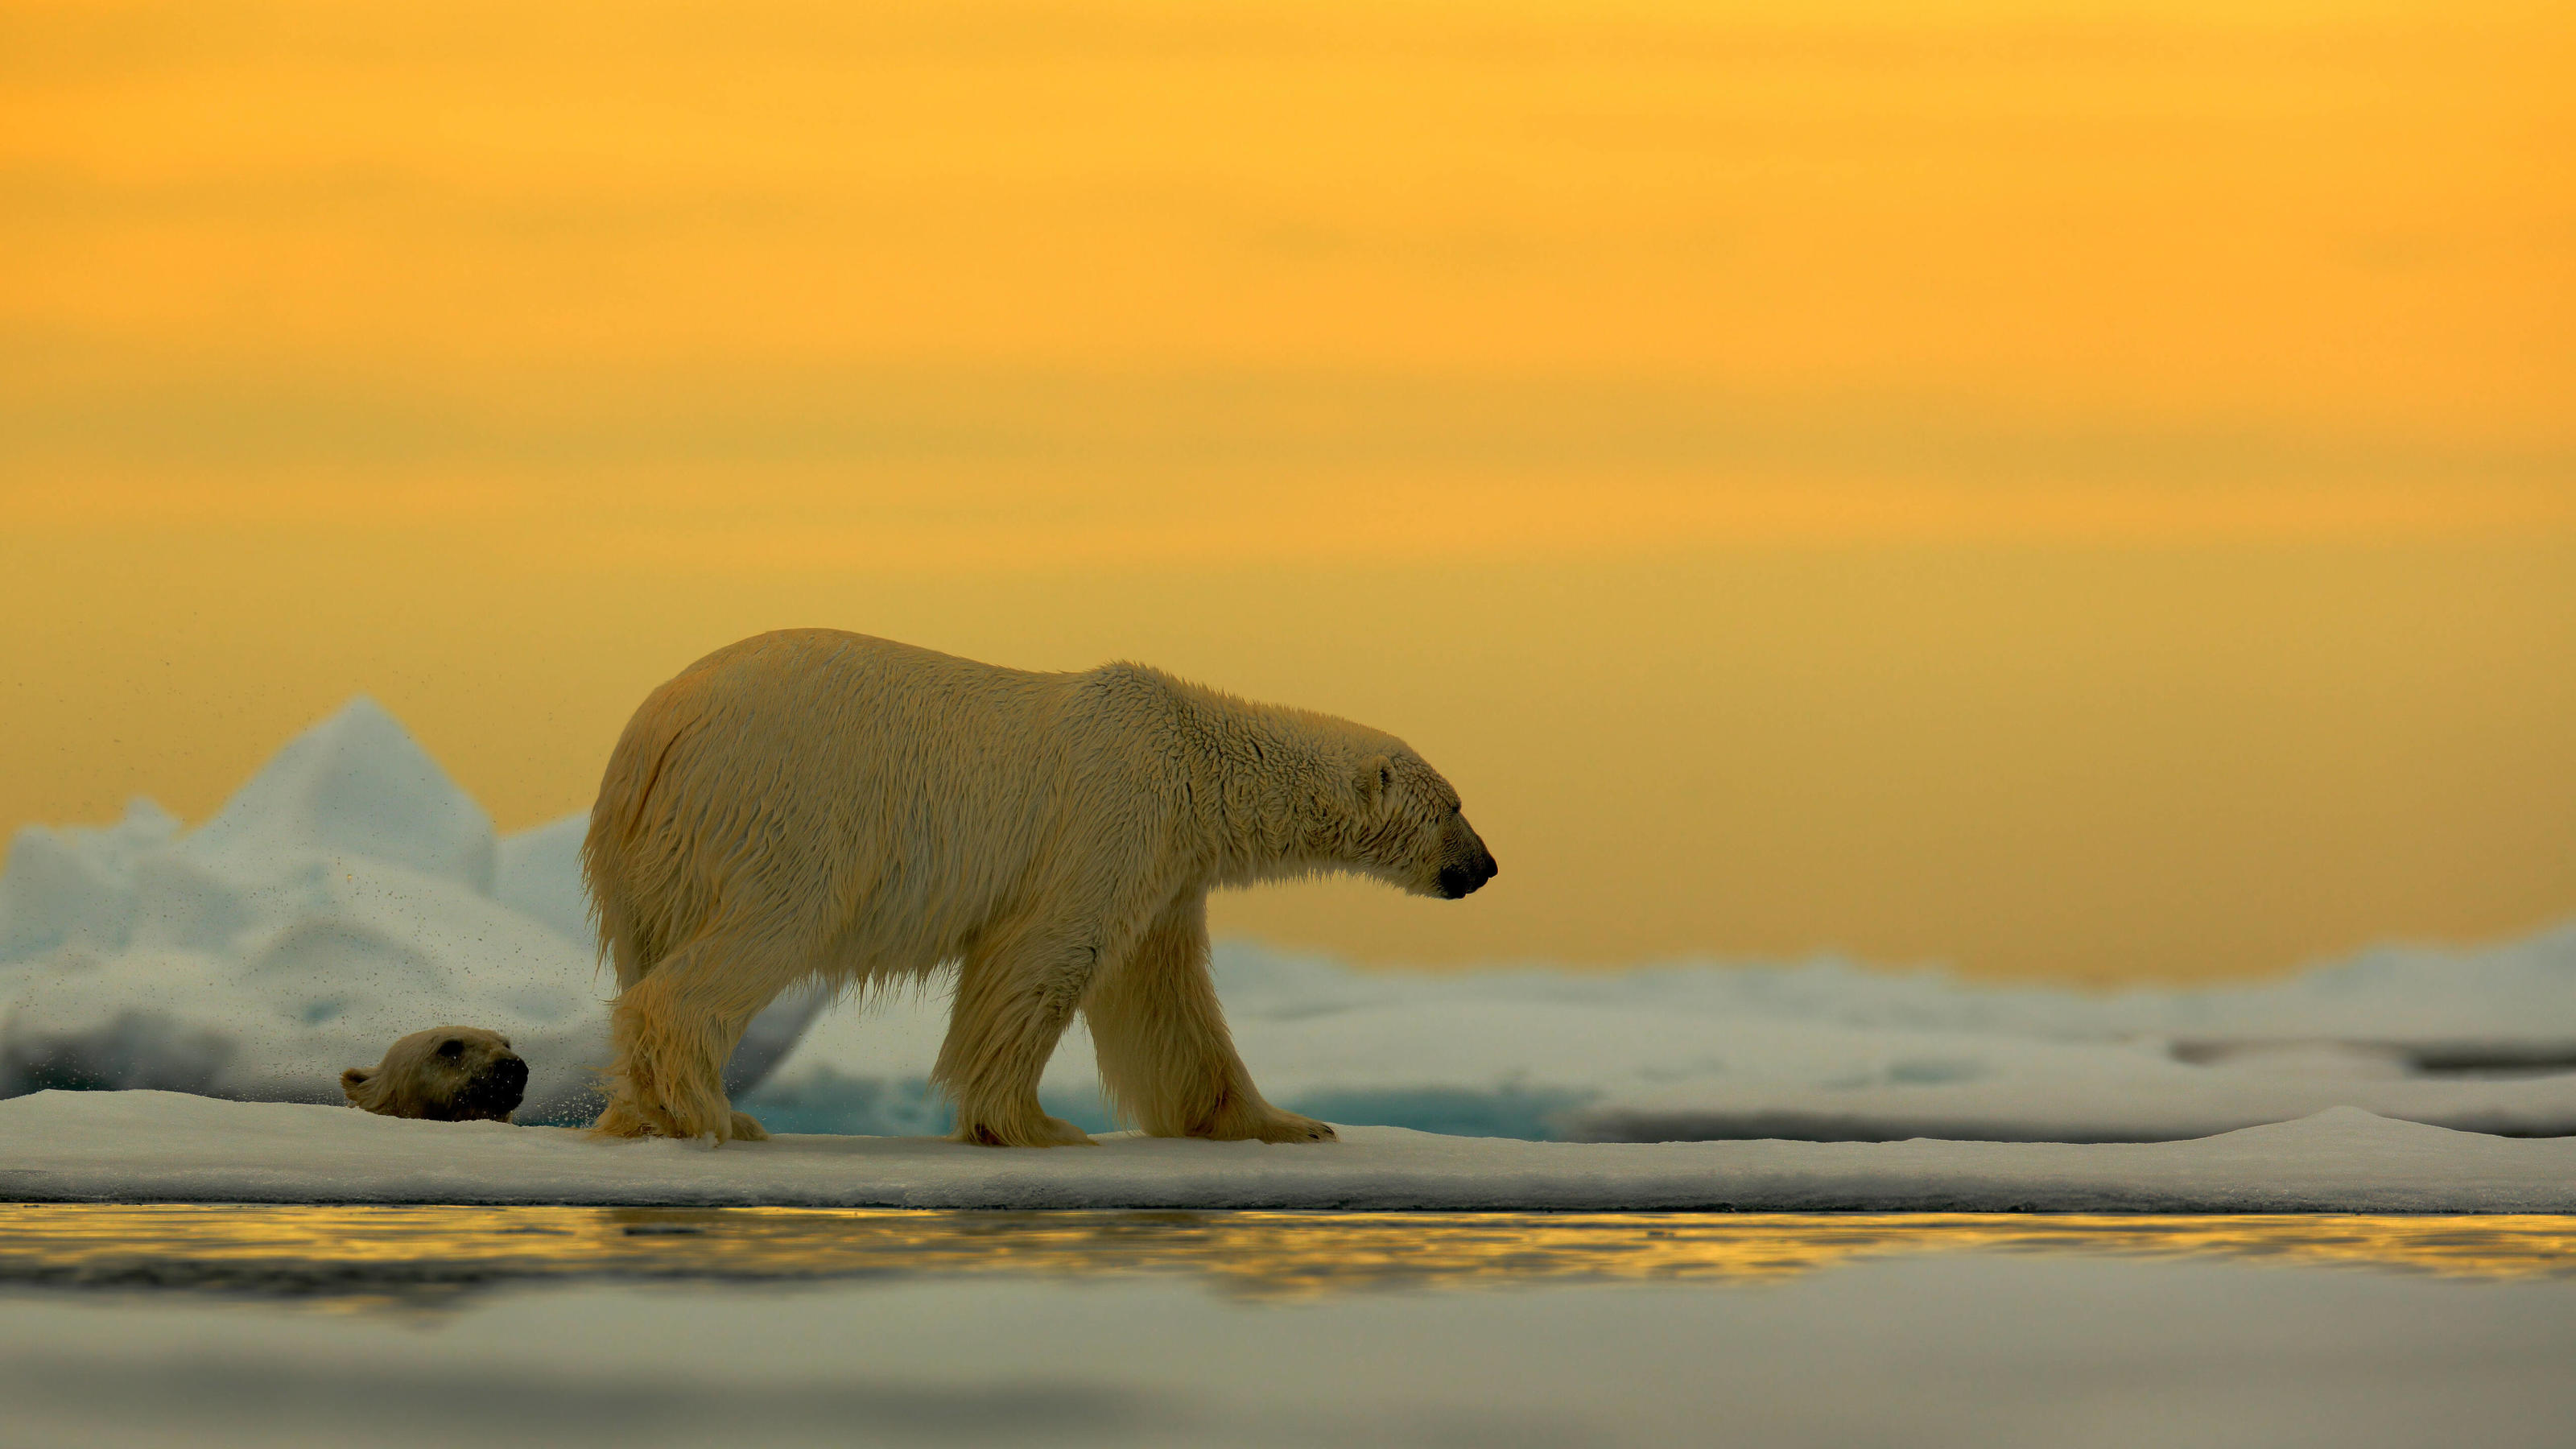  Eisbär Ursus maritimus im Treibeis vor Sonnenuntergang, Spitzbergen, Norwegen *** Polar bear Ursus maritimus in drift ice before sunset, Spitsbergen, Norway Copyright: xOndrejxProsickyx BIA157169